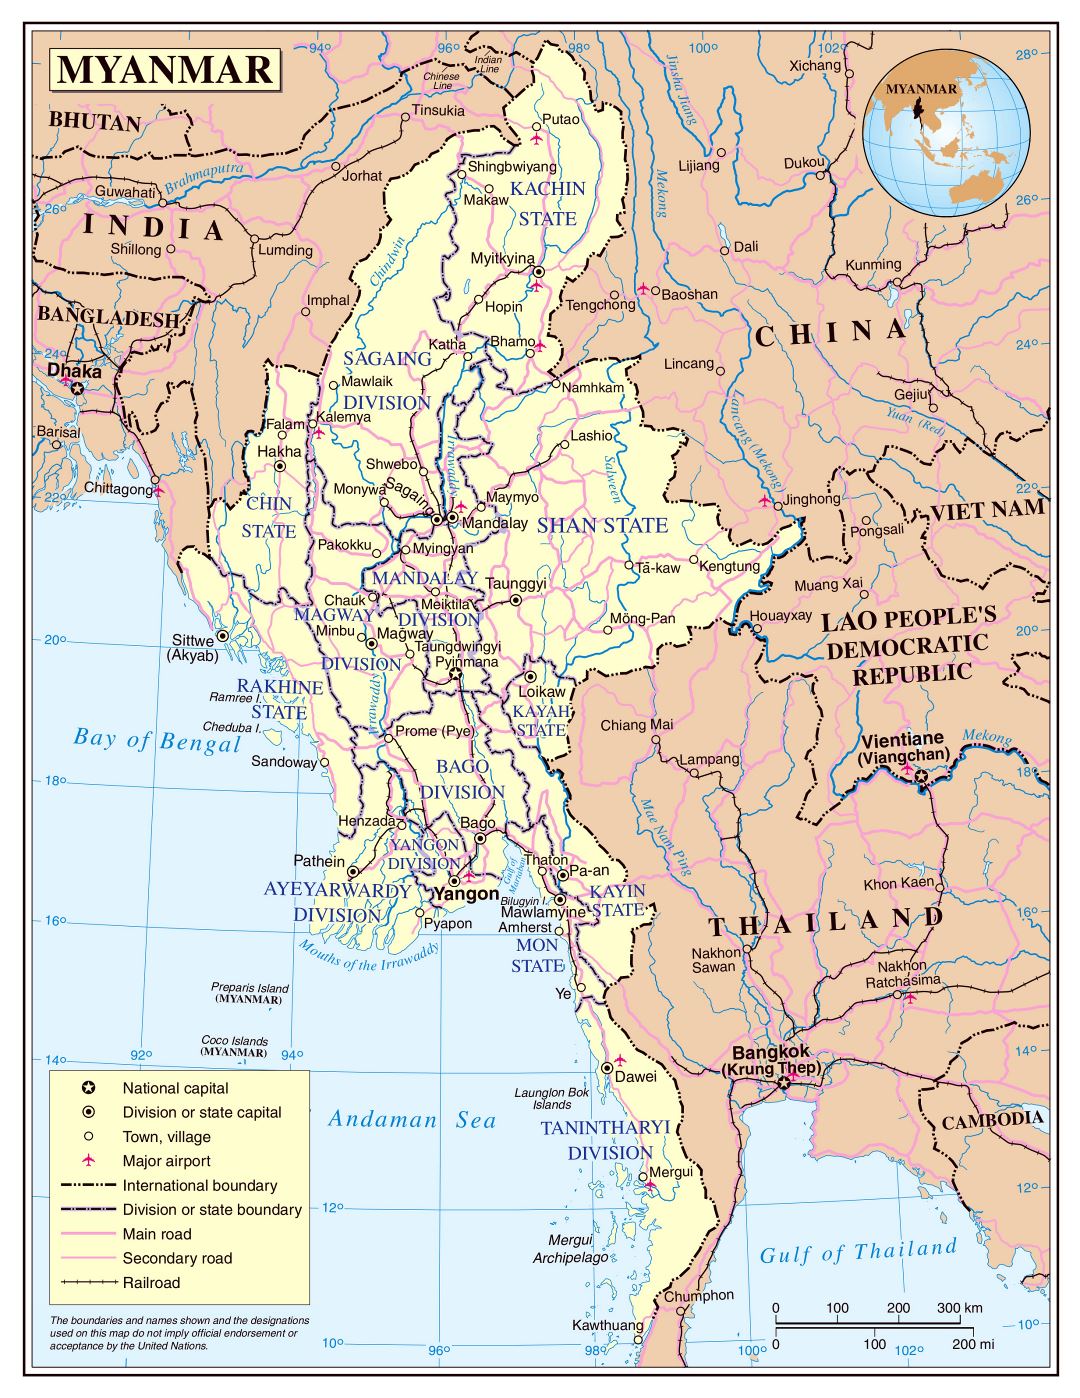 Grande detallado mapa político y administrativo de Birmania con carreteras, ferrocarriles, ciudades y aeropuertos